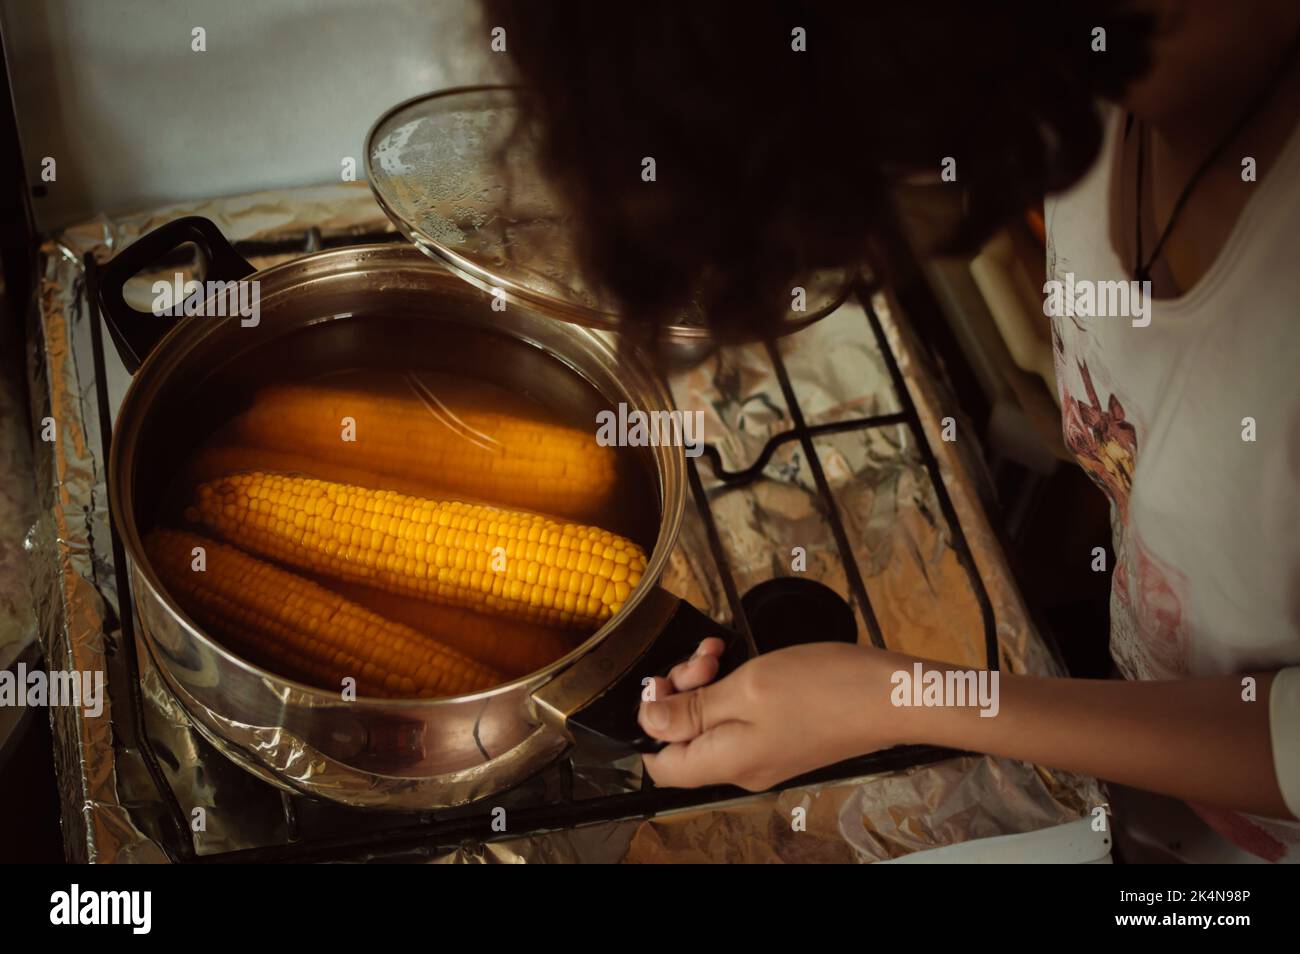 L'hôtesse regarde dans un pot avec du maïs cuit sur la cuisinière à la maison Banque D'Images